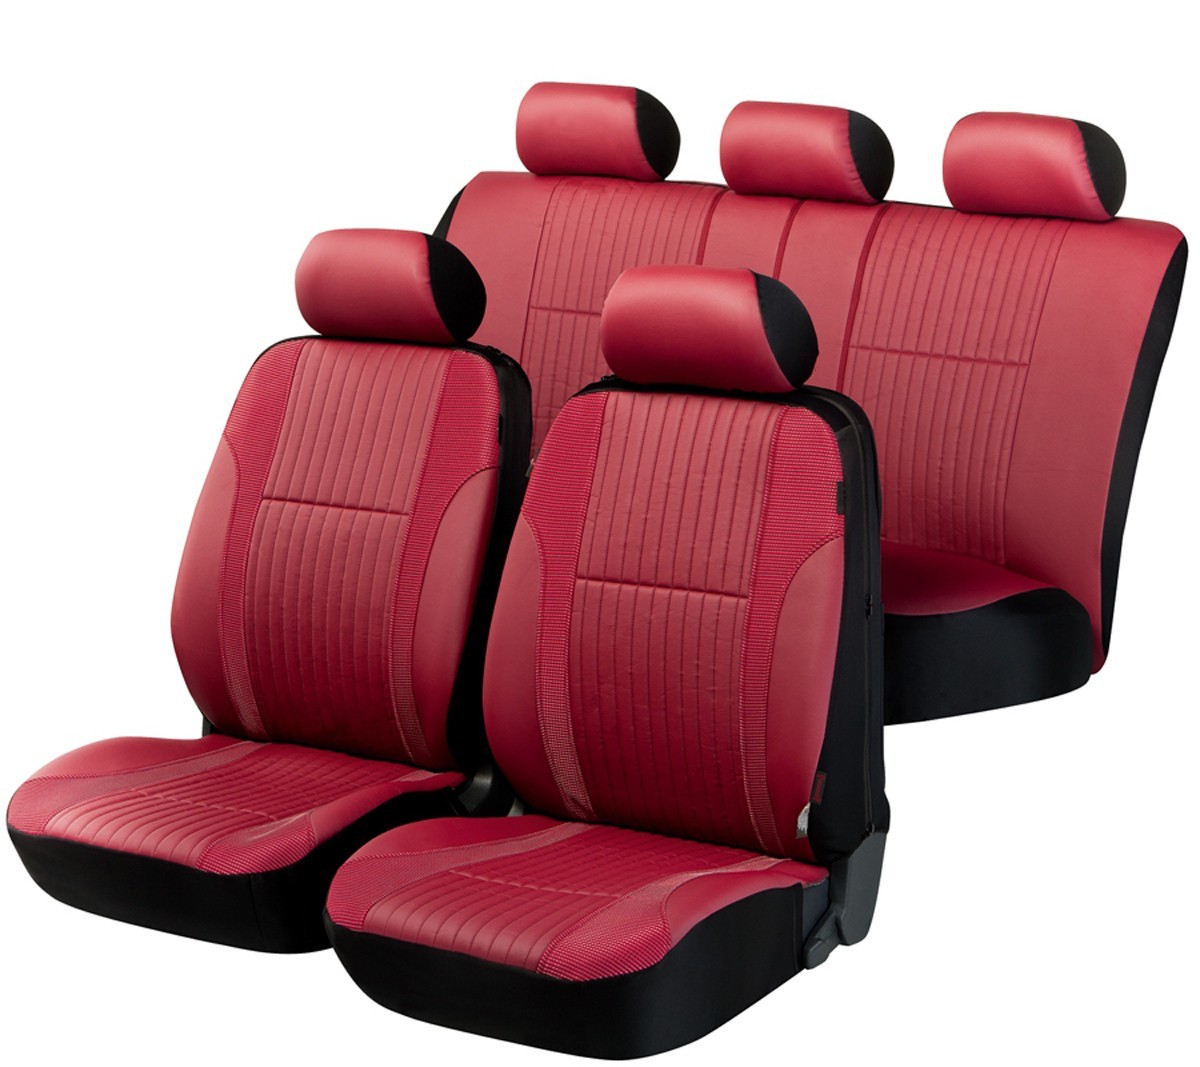 Komplettsatz Autositzbezüge Rot Kunstleder Schonbezug Sitzbezüge